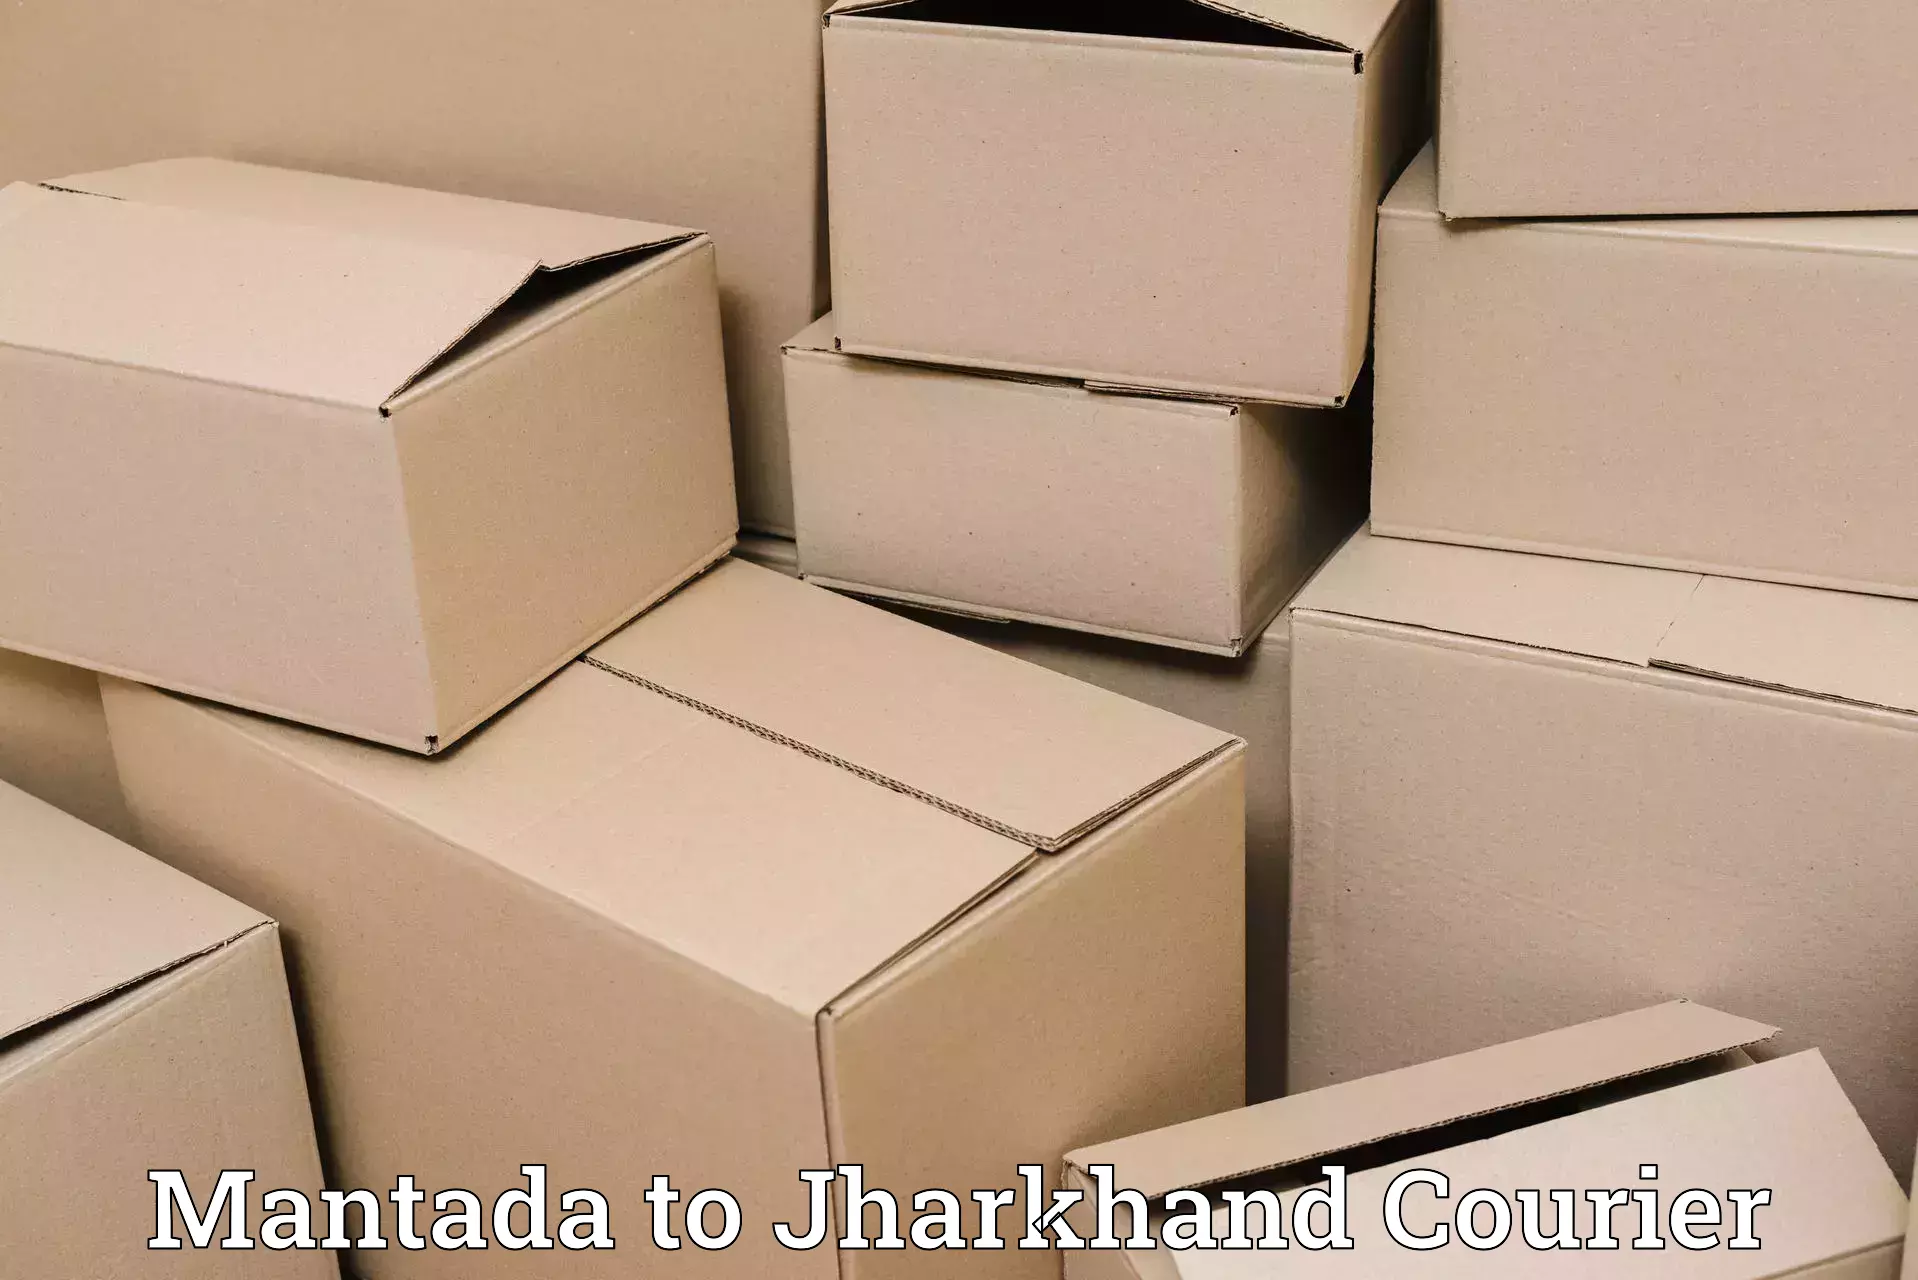 User-friendly courier app Mantada to Rangalia